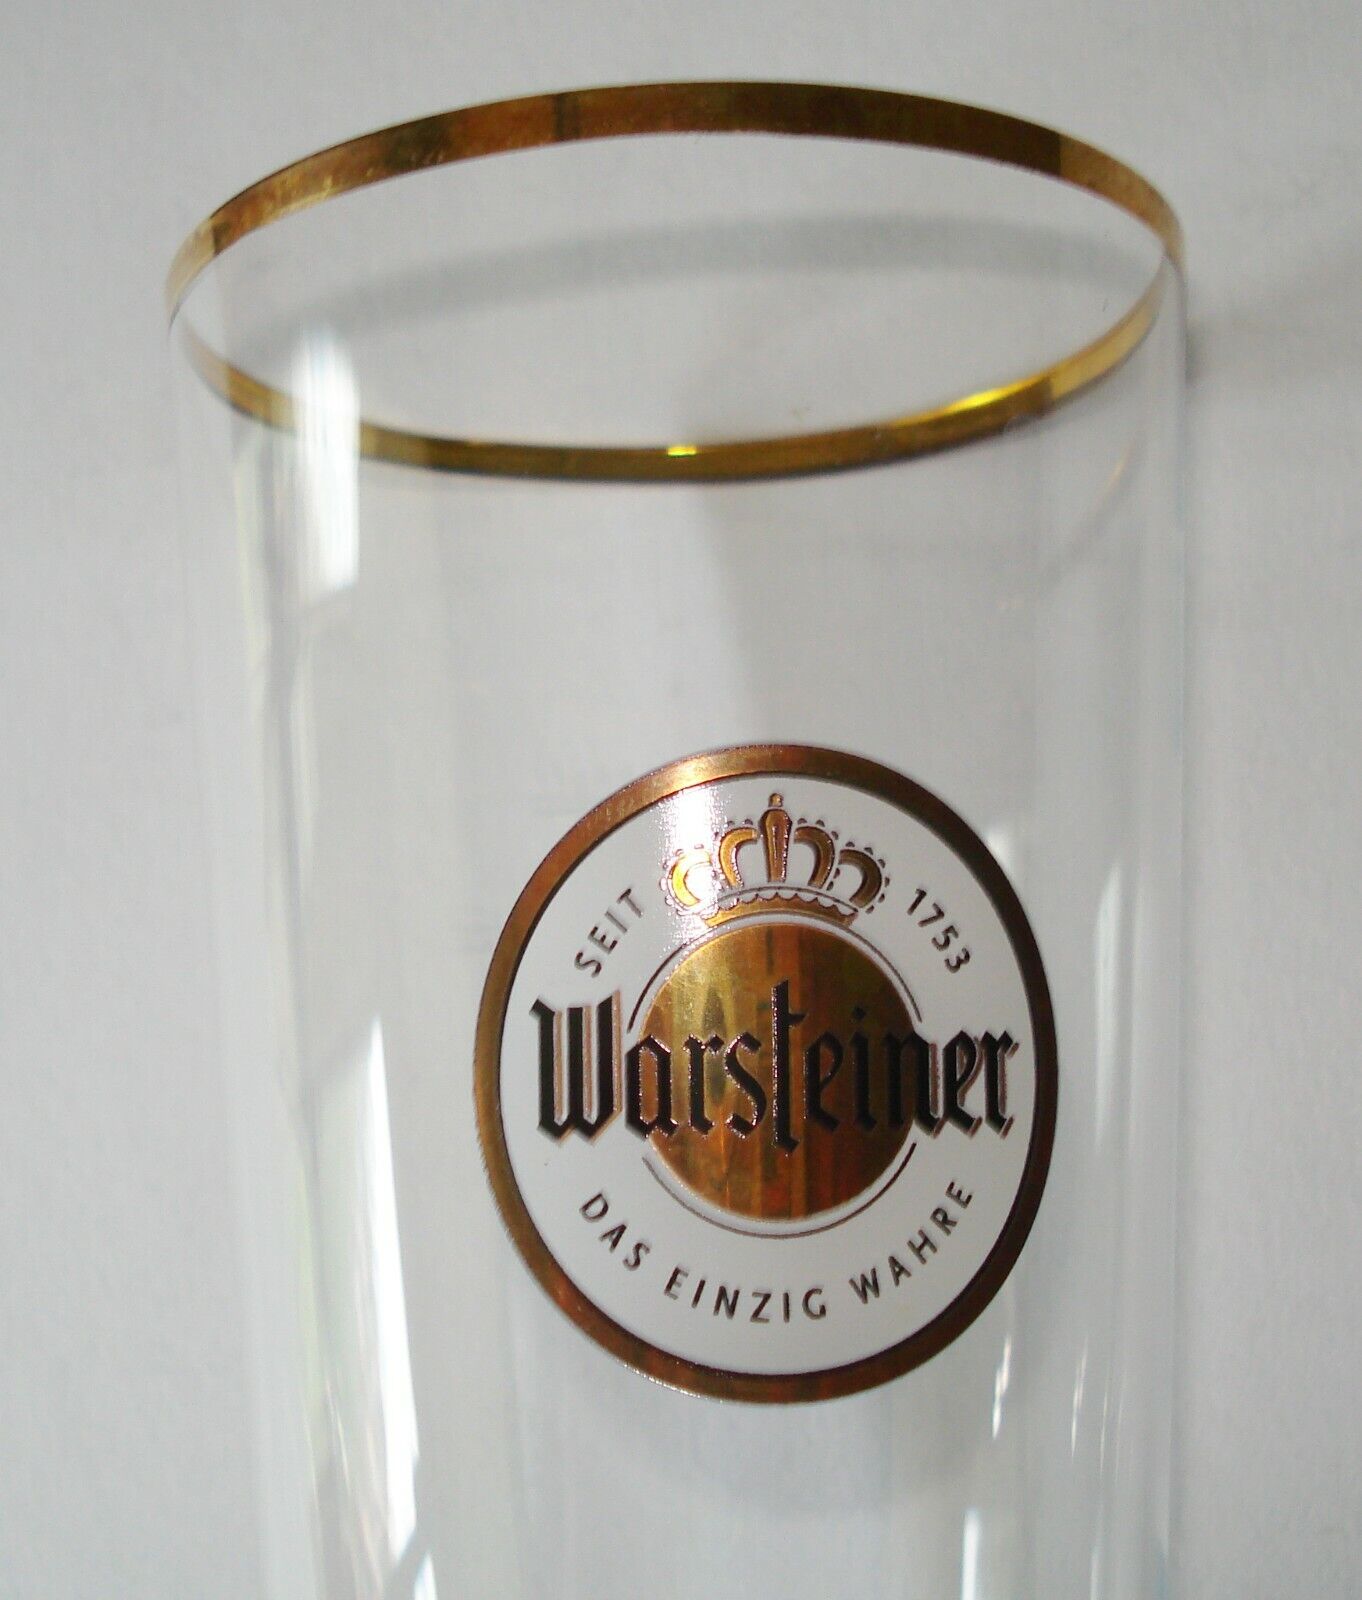 Warsteiner Beer Glass Ritzenhoff 0.3L Familientradition Seit 1753 German Made